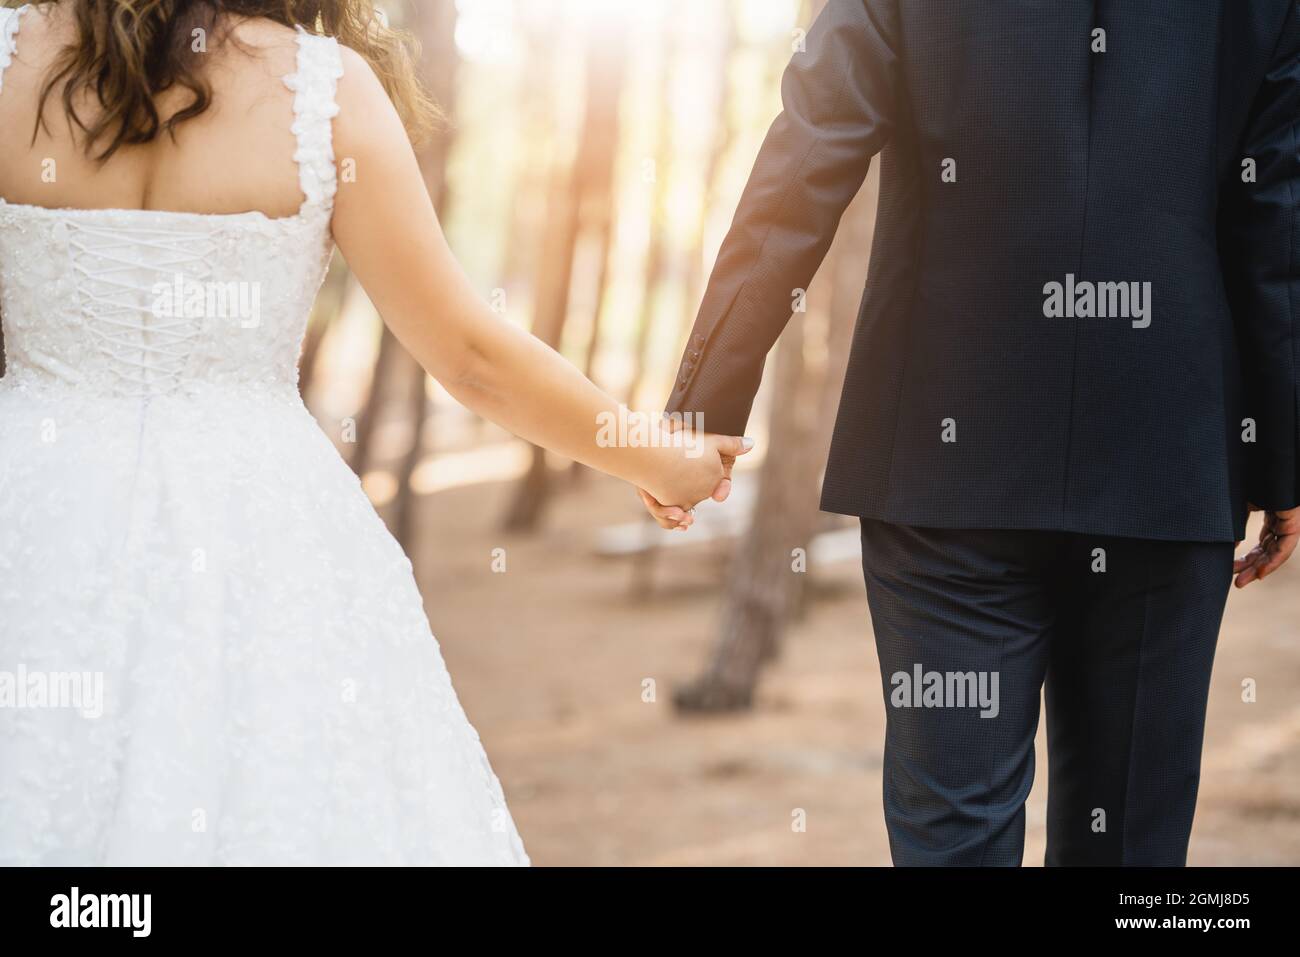 Sposare e sposare insieme, e tenere le mani contro la vista profonda foresta. Concetto di matrimonio. Foto di alta qualità Foto Stock